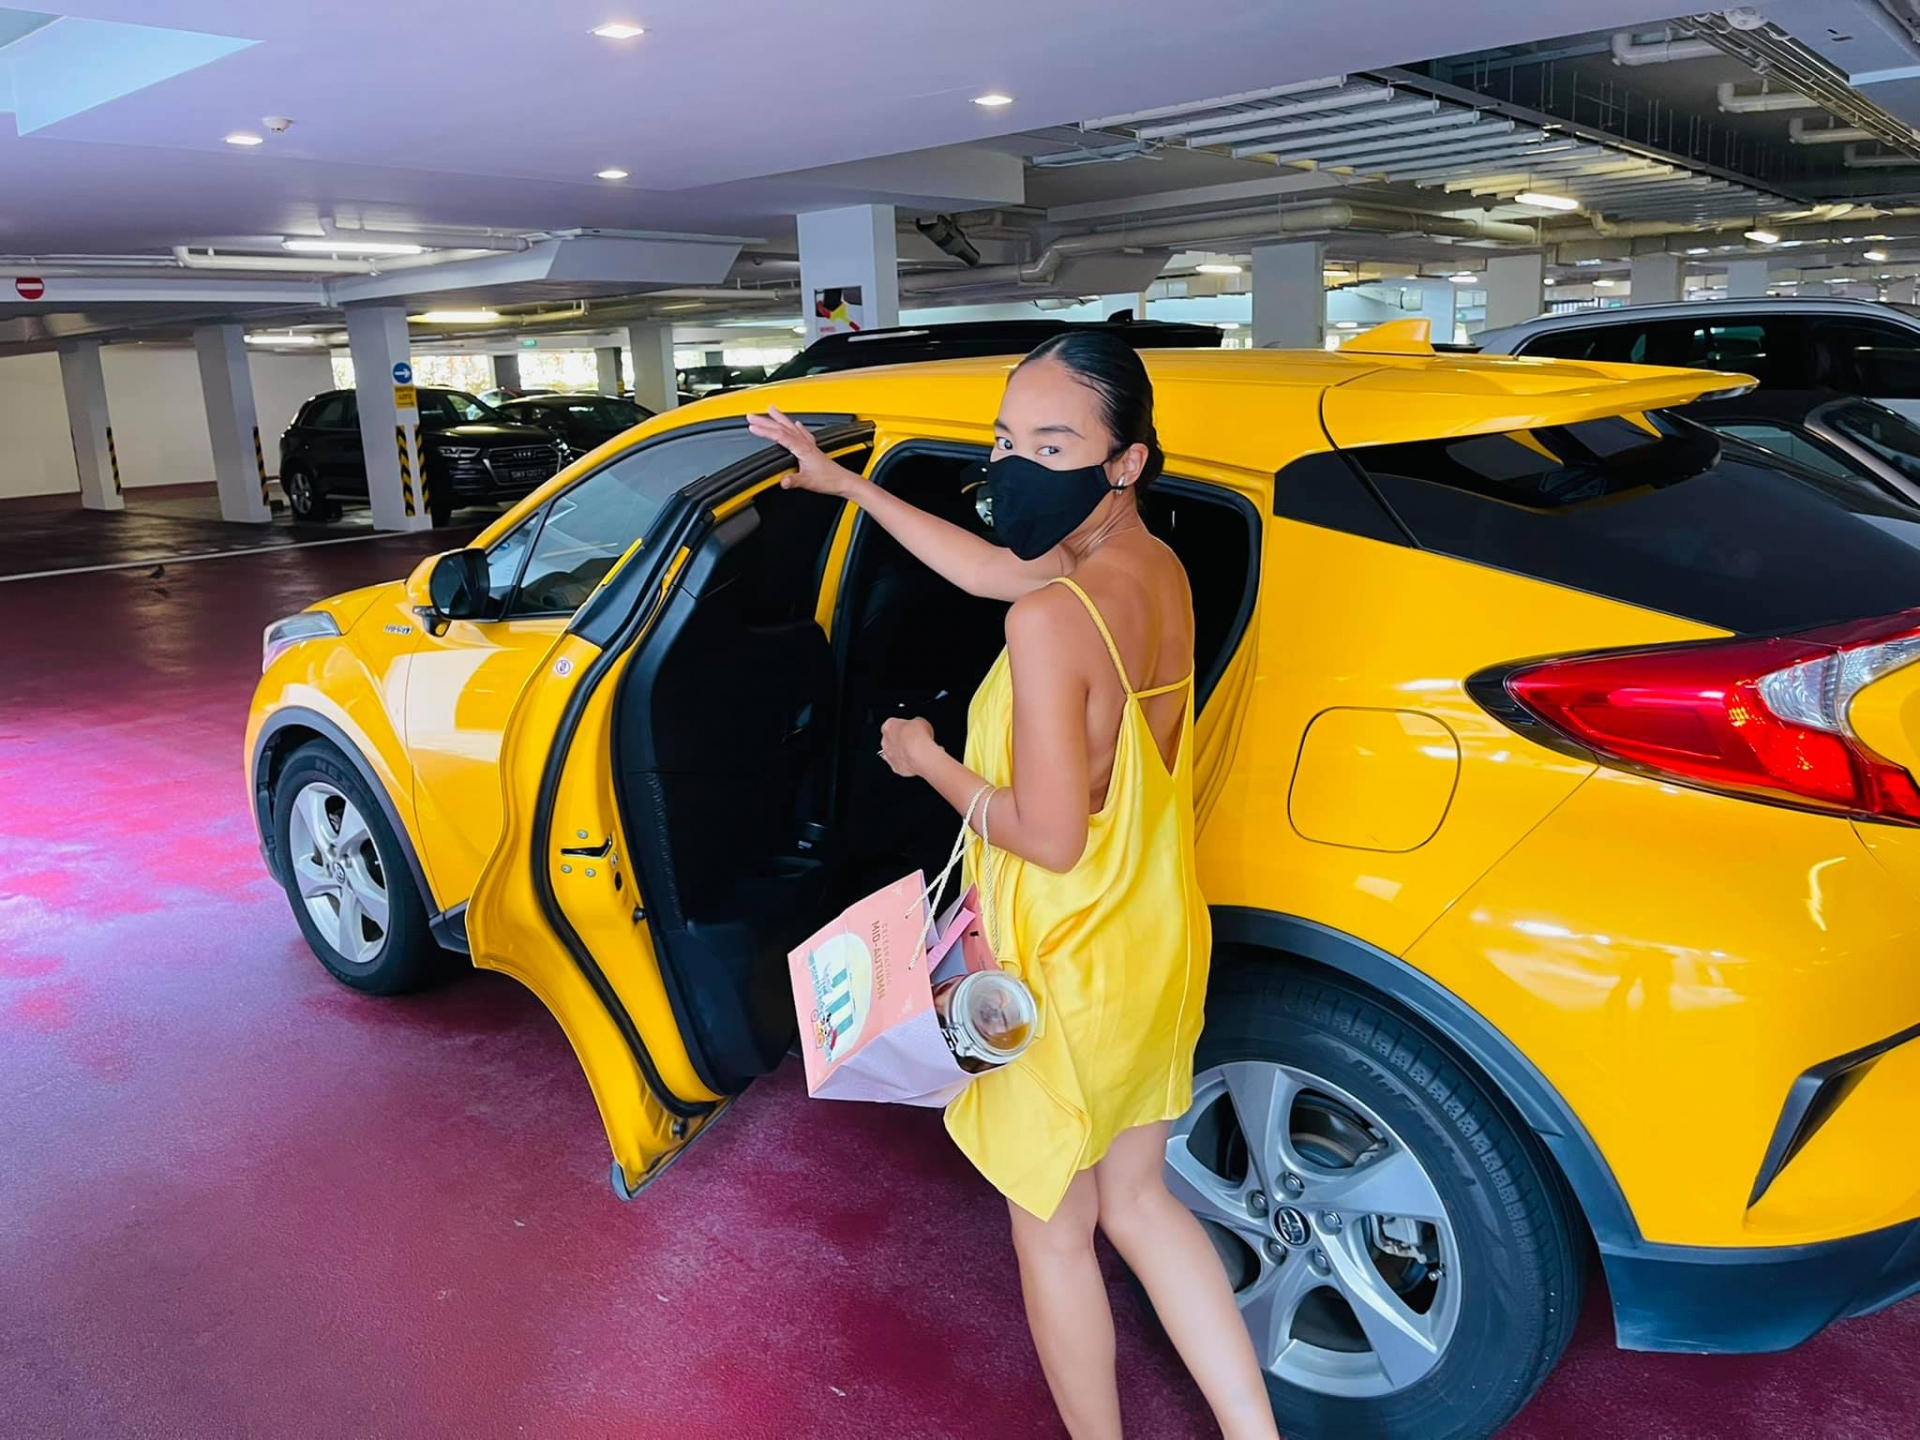 Đoan Trang lên đồ vàng rực rỡ, ton-sur-ton với xe hơi mới tậu ở Singapore. Sau 4 tháng định cư ở nước ngoài, cô đã ổn định cuộc sống và vui vẻ tận hưởng những tháng ngày làm 'bà nội trợ' đích thực.